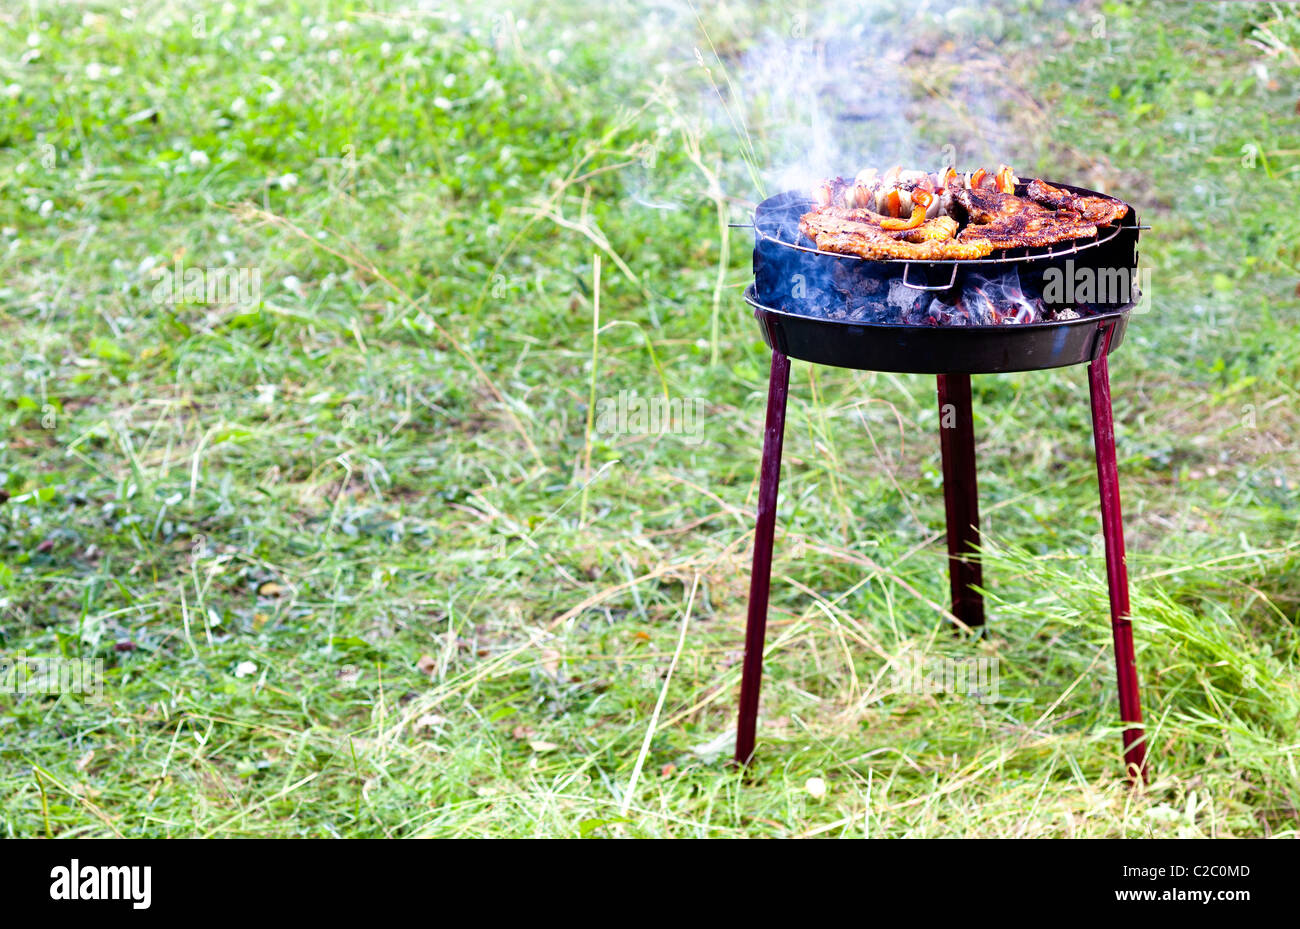 Entrecôte juteuse cuisson sur le grill, nice peu de fumée visible. Banque D'Images